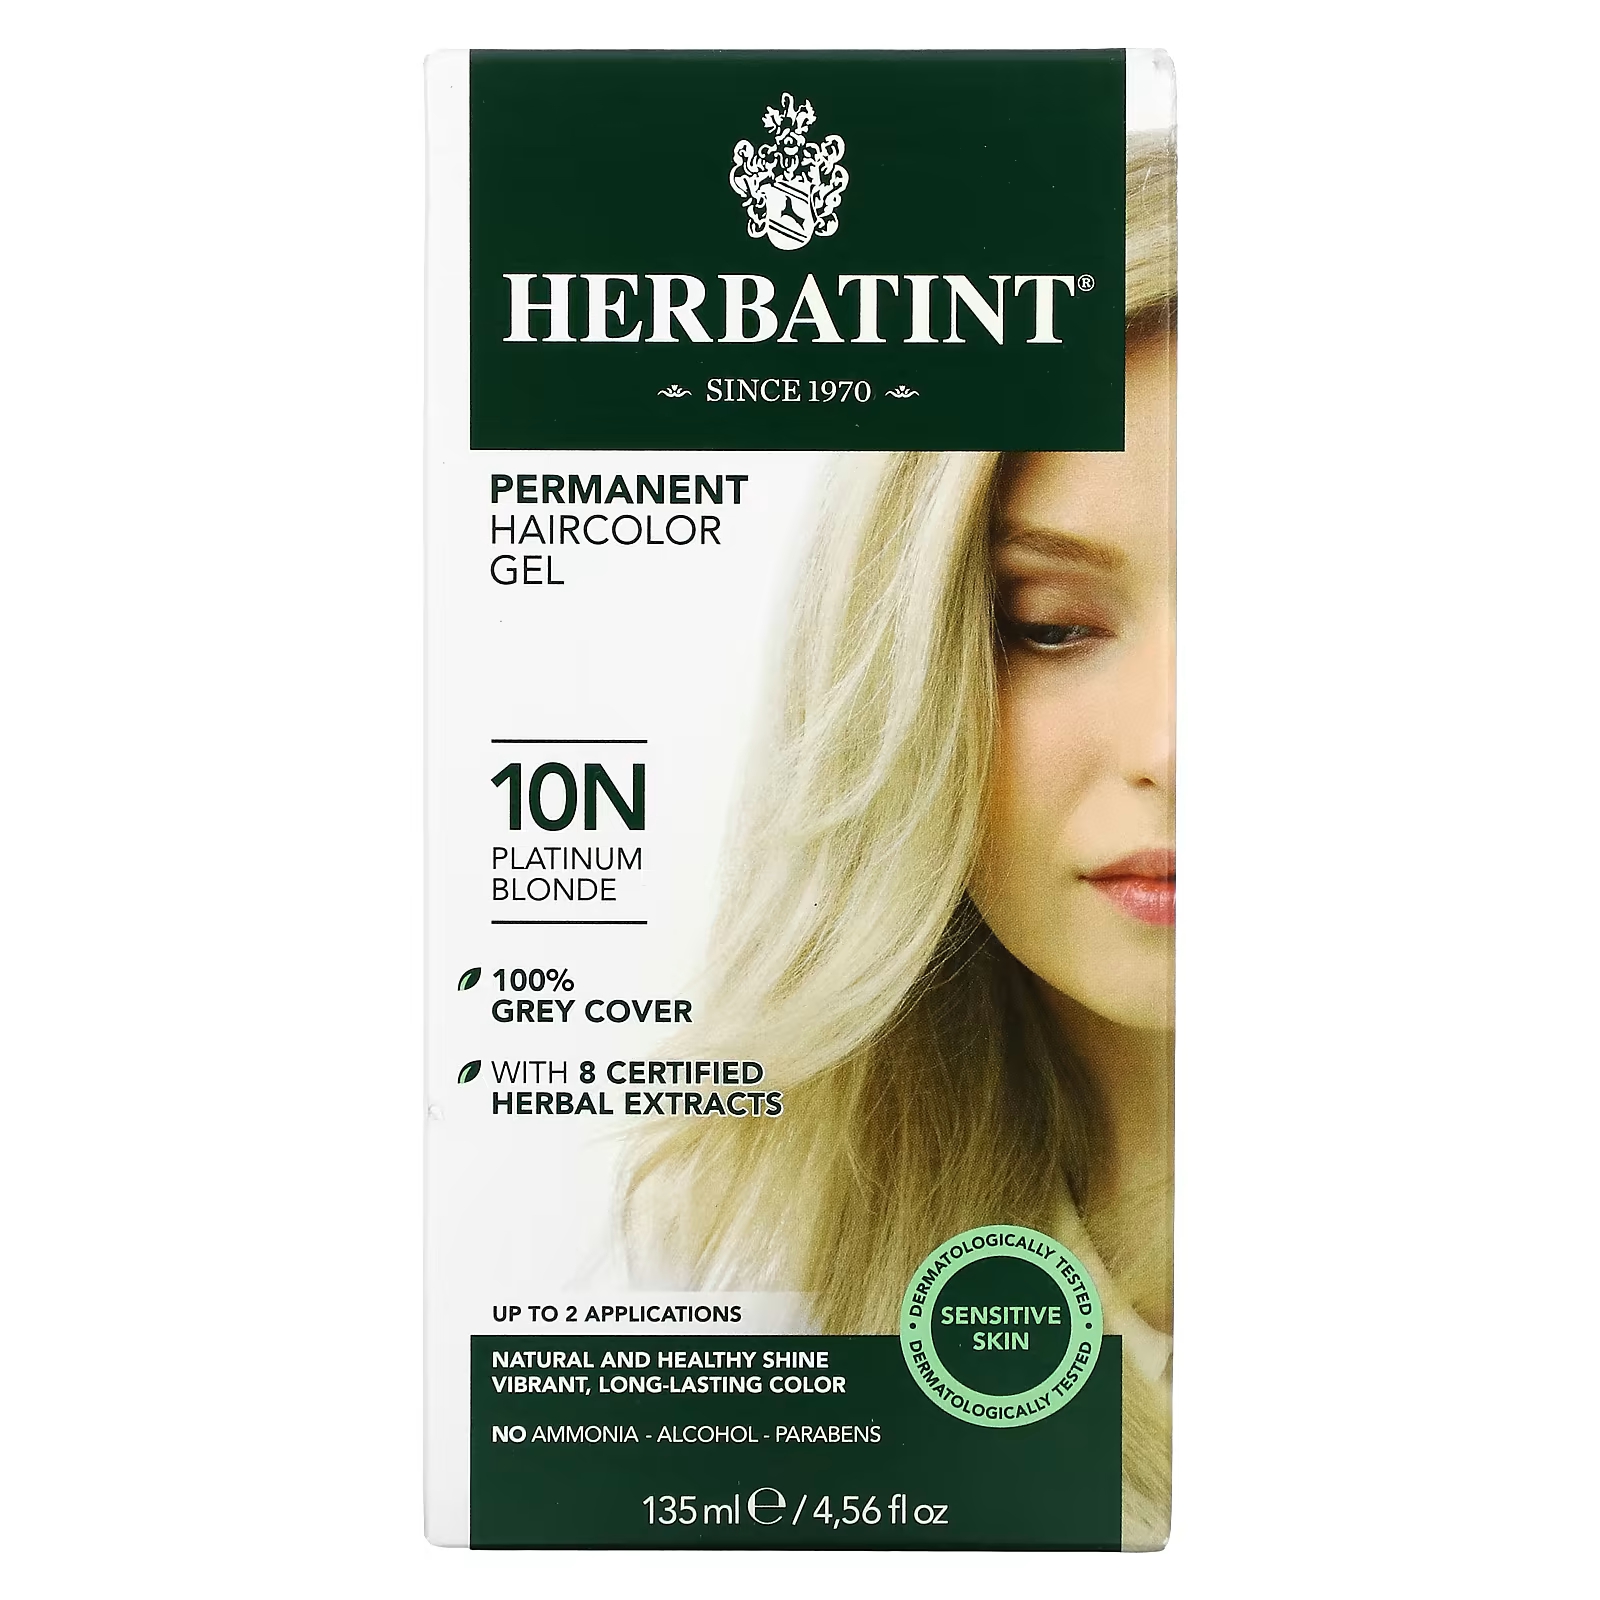 Перманентная гель-краска для волос Herbatint 10N платиновый блондин, 135 мл herbatint стойкая гель краска для волос 10n платиновый блонд 135 мл 4 56 жидк унции